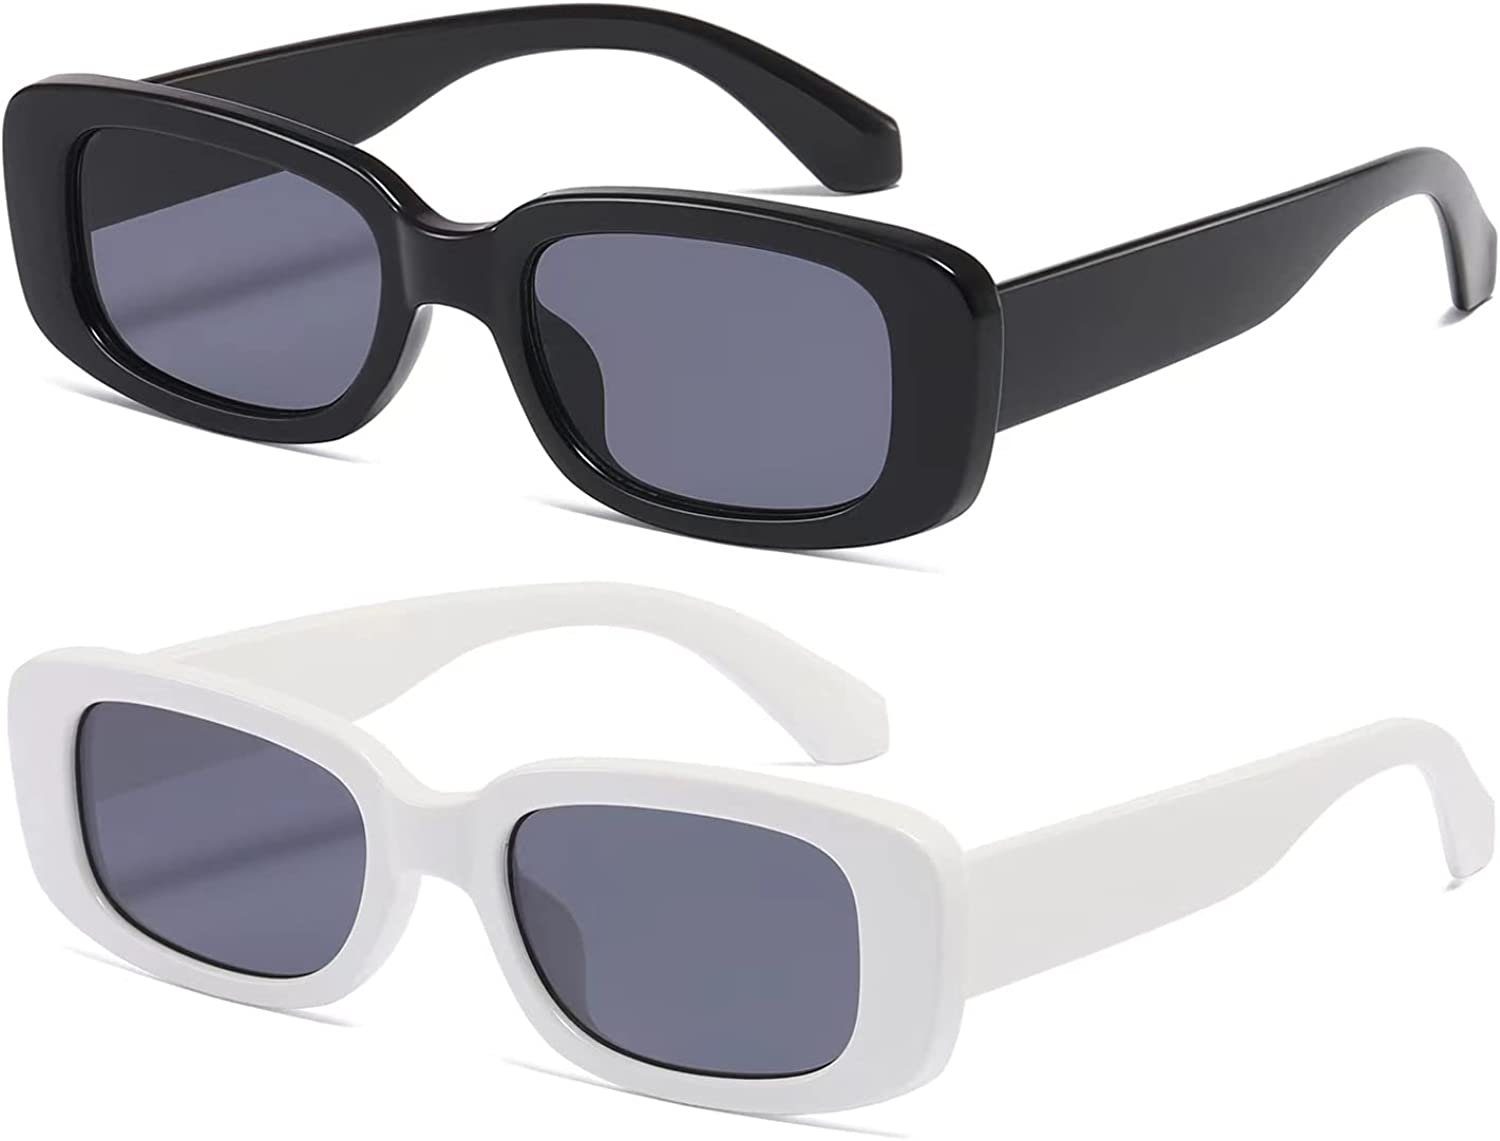 Sonnenbrille mit Schutz UV Rechteckige Vintage Jormftte Sonnenbrille UV400